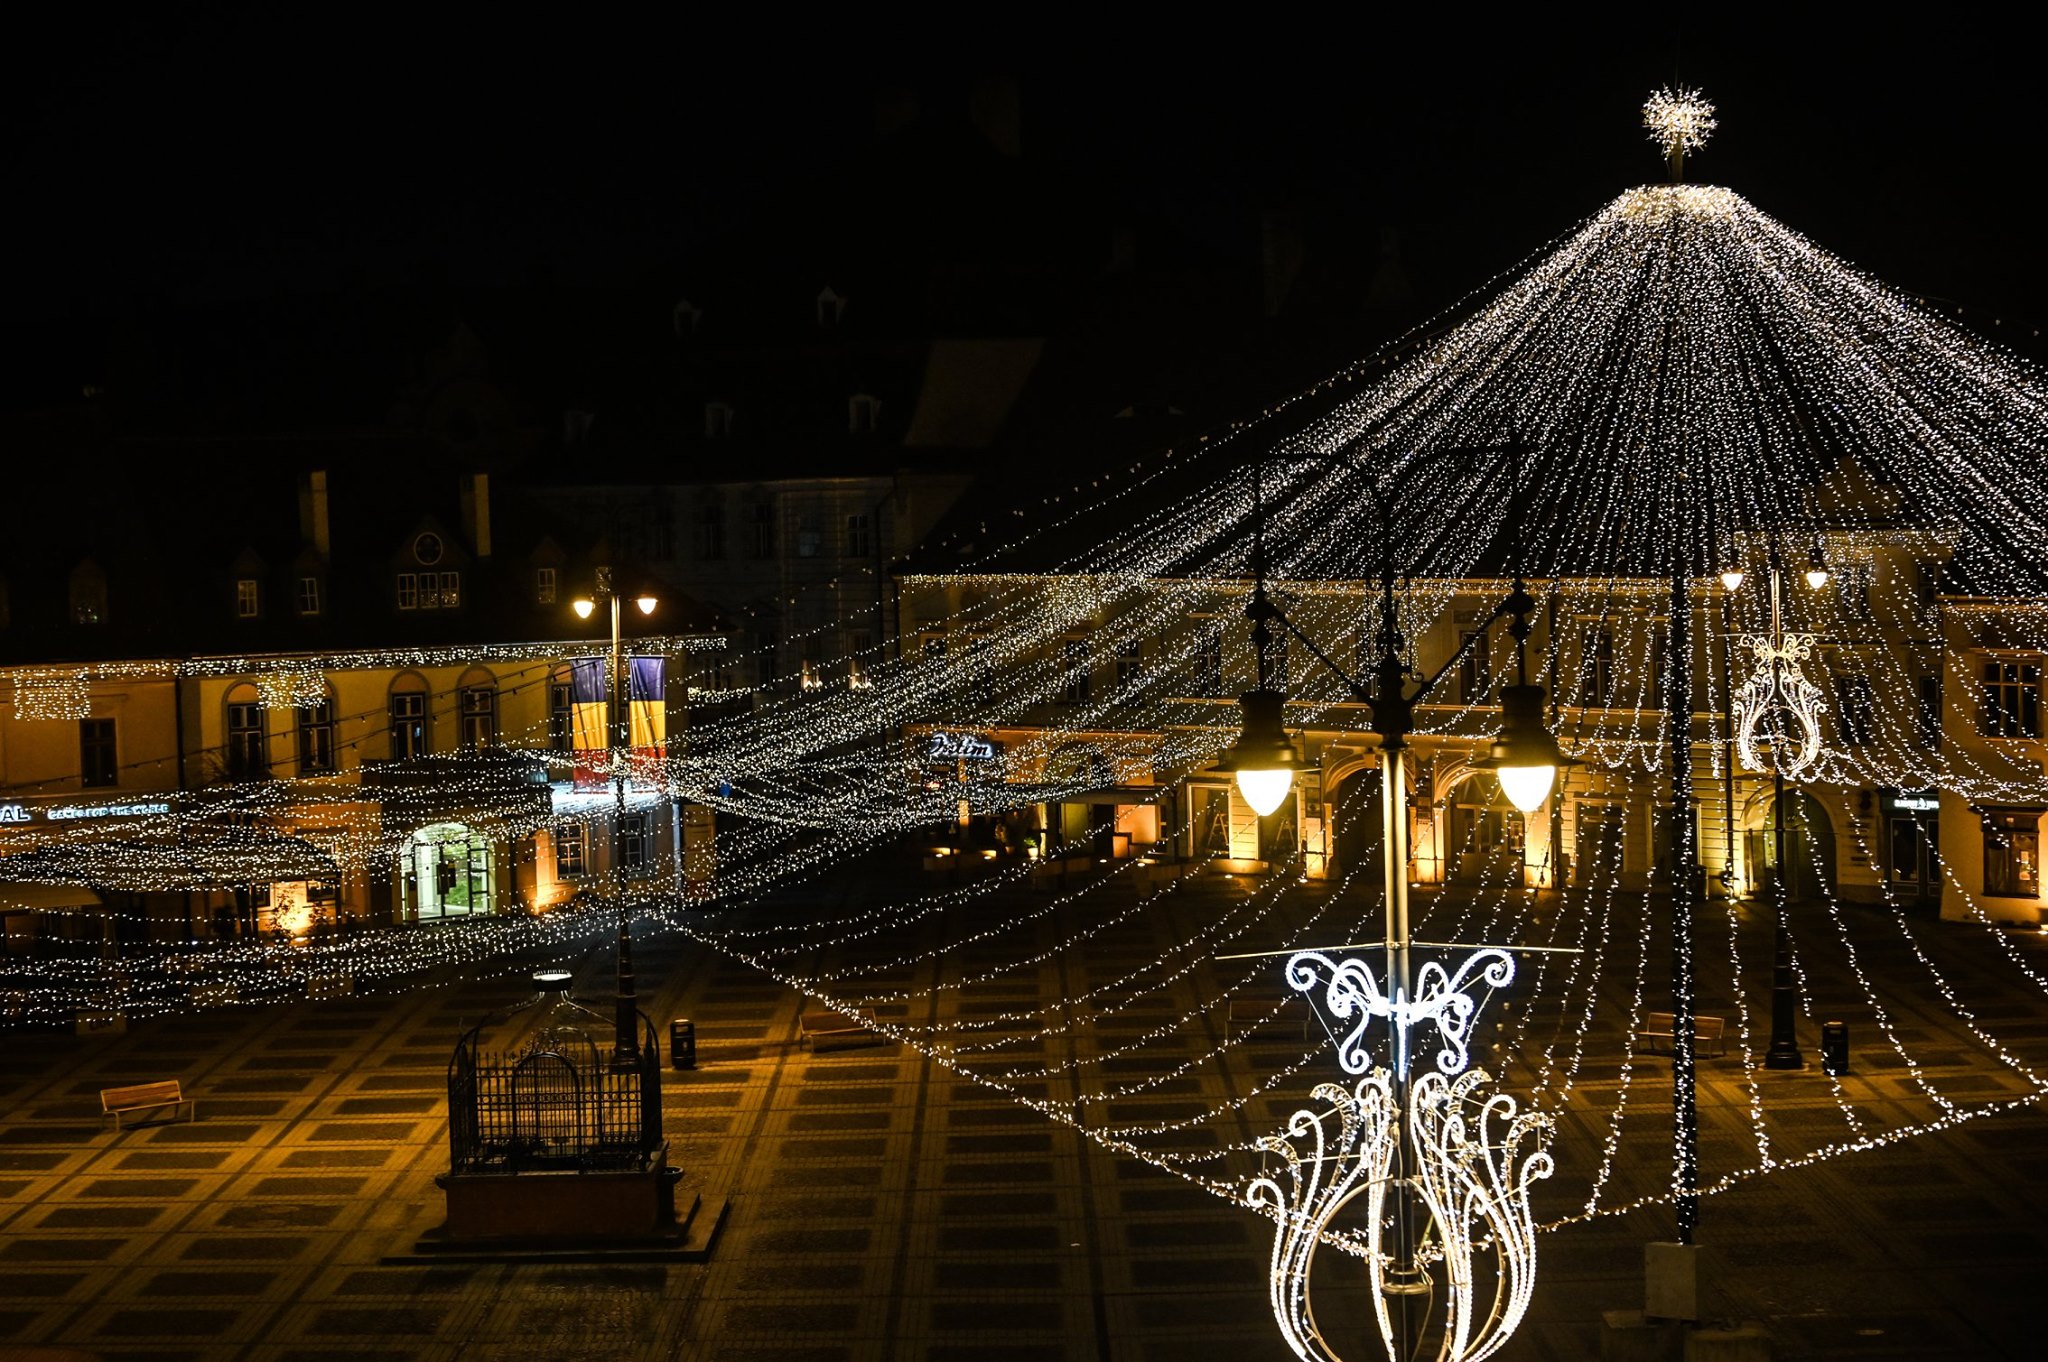 S-a „aprins” centrul Sibiului. Piața Mare pustie, dar iluminată festiv